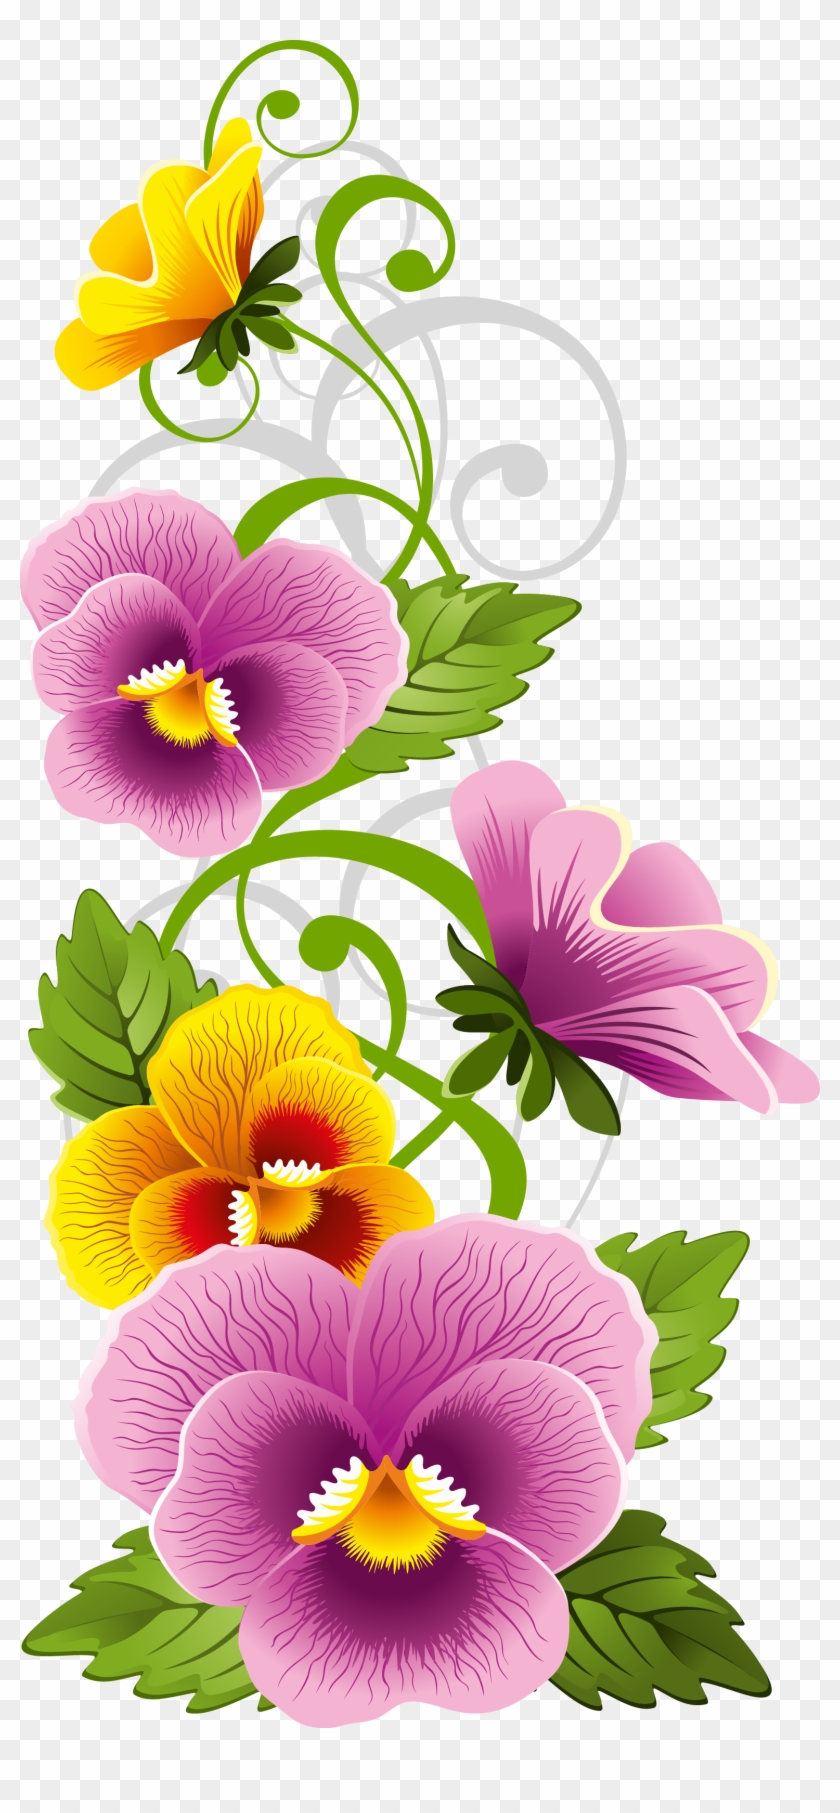 Pansy Flower Clipart - Dibujos De Pensamientos Flores - Free Transparent  PNG Clipart Images Download